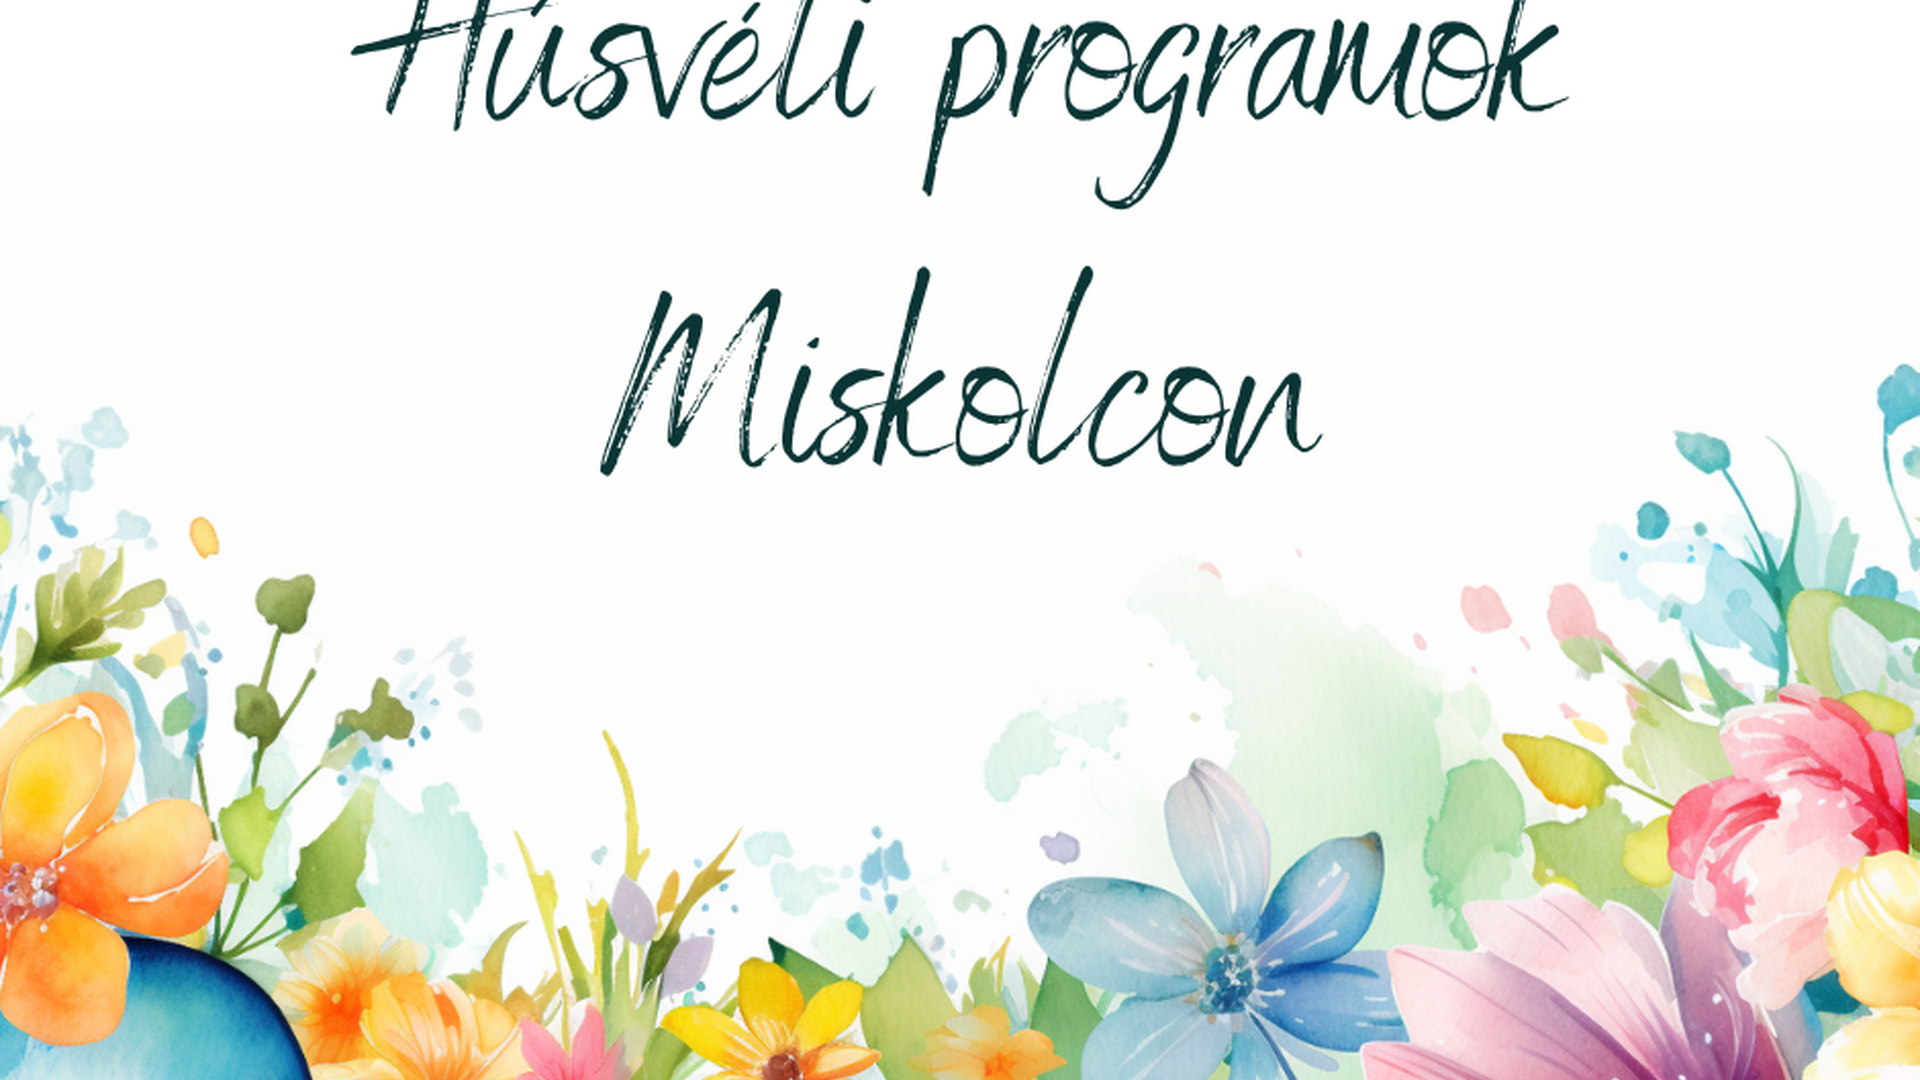 Húsvéti programok Miskolcon